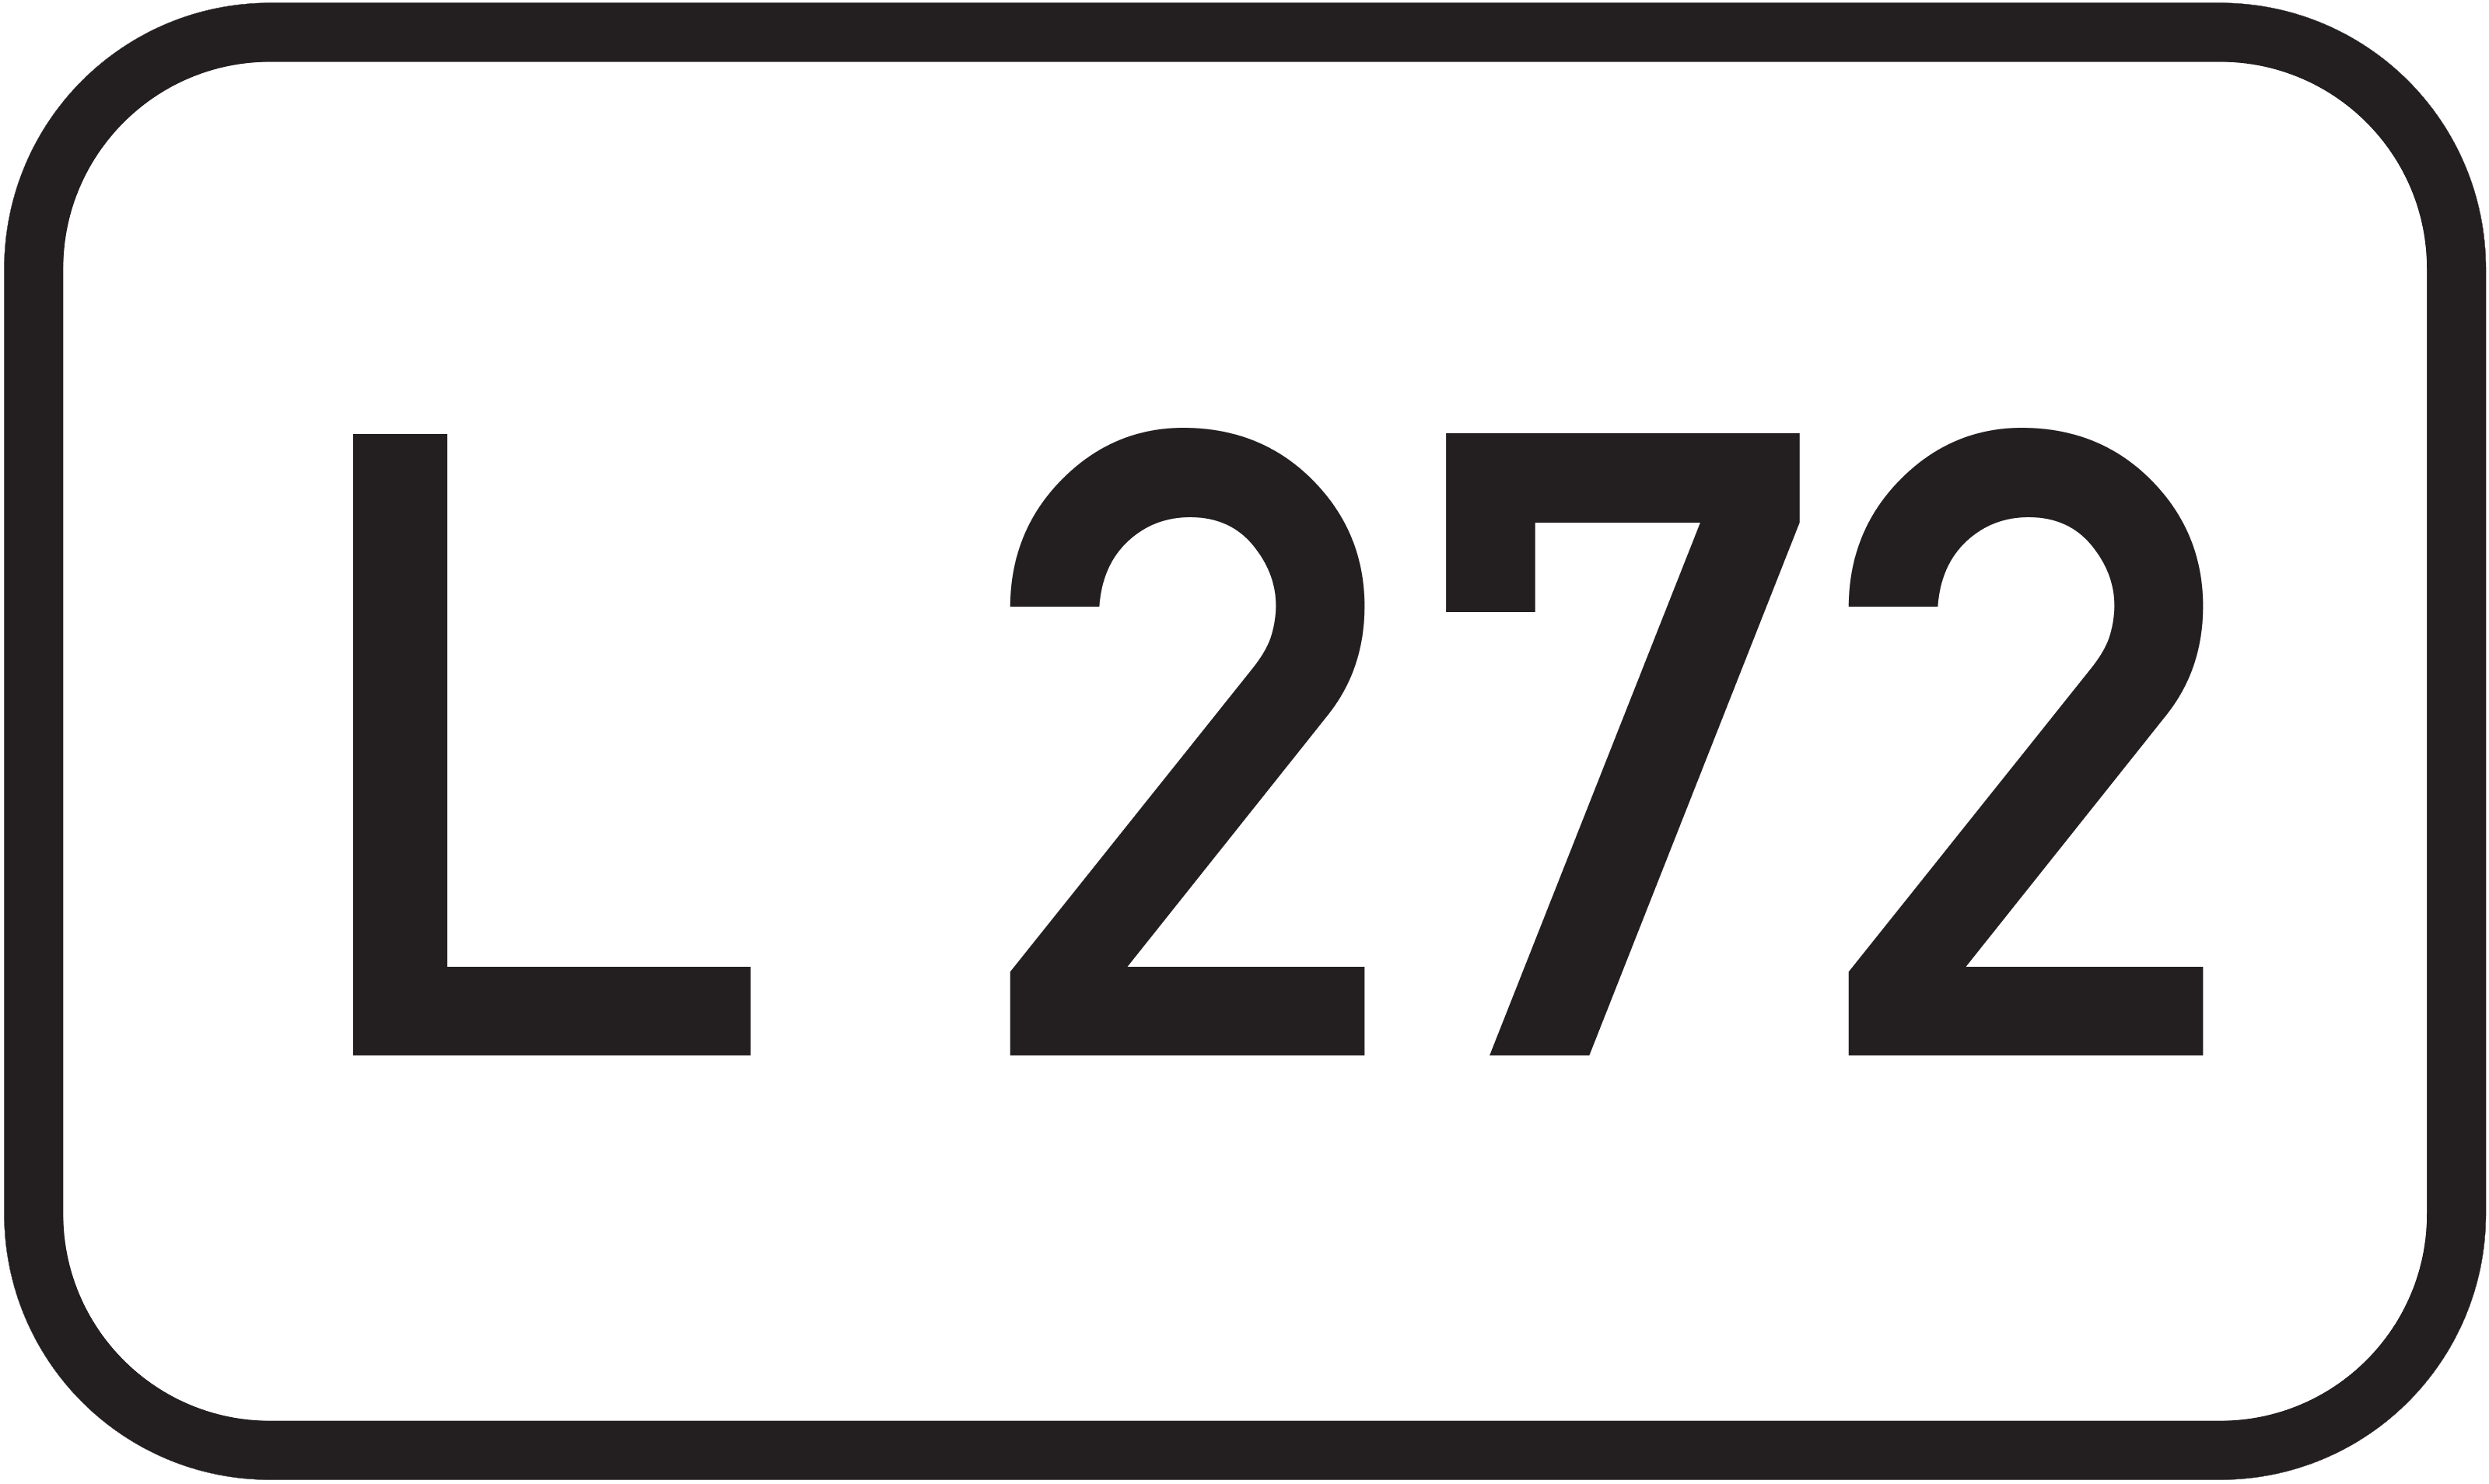 Landesstraße L 272